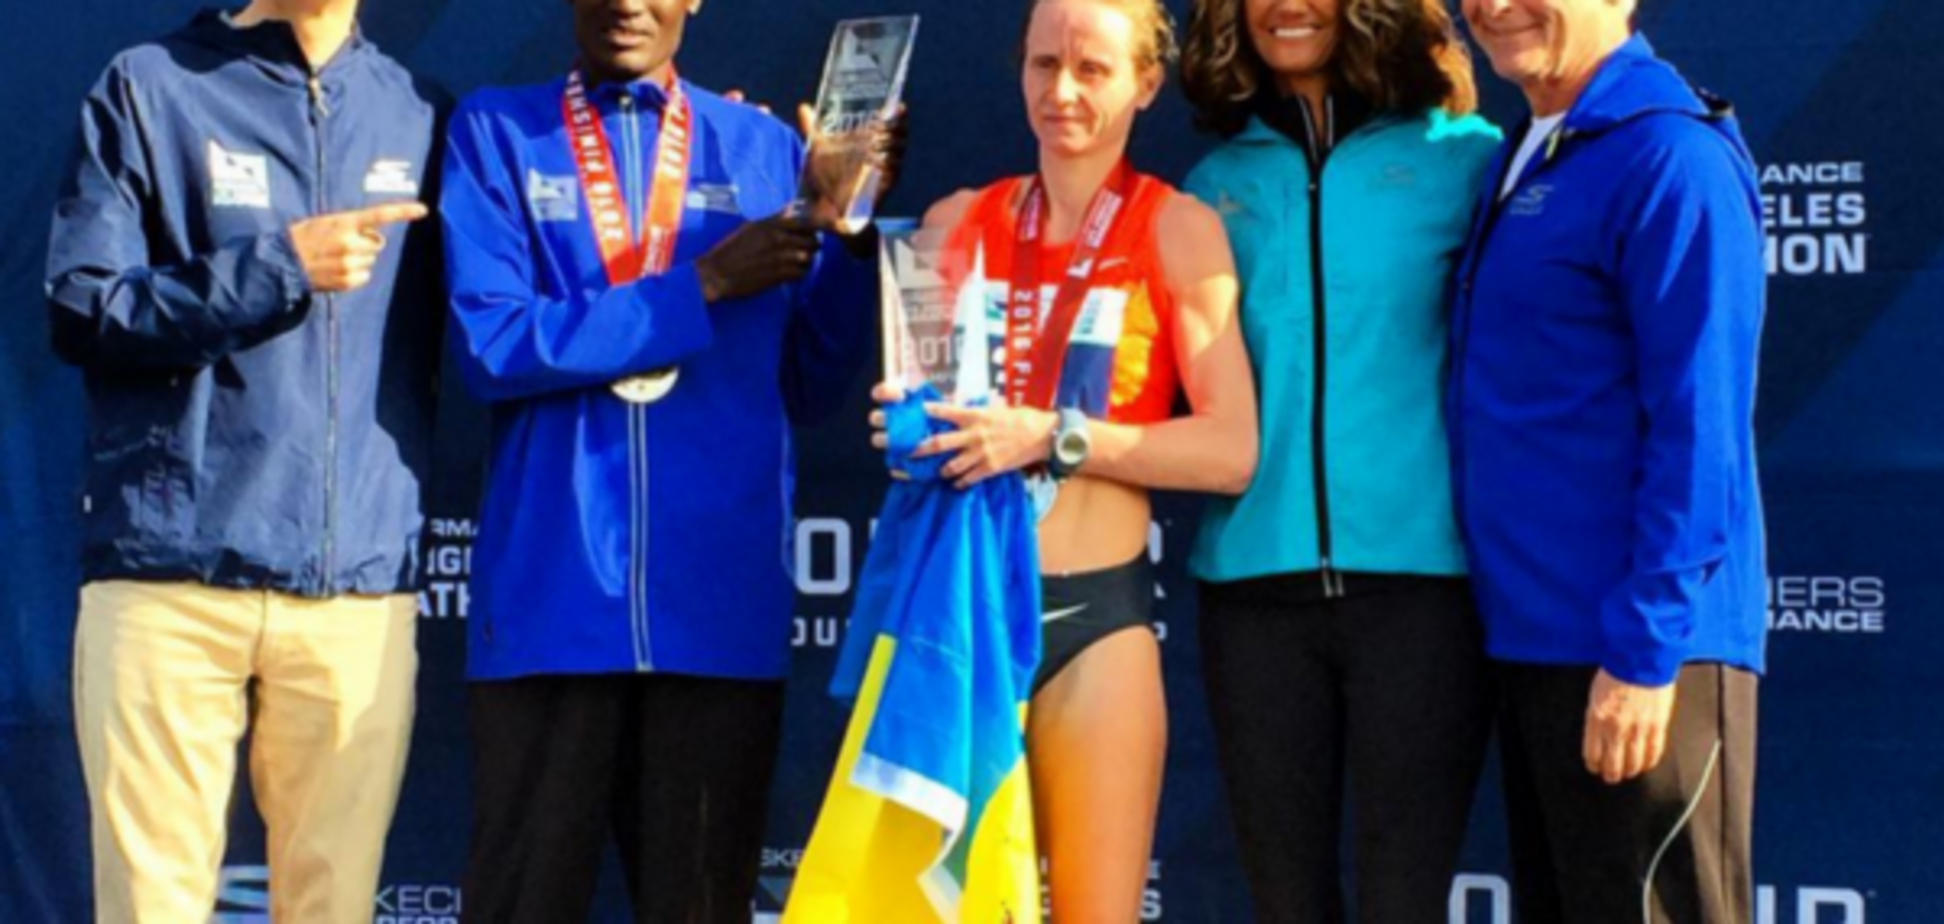 Українка виграла один із найпрестижніших марафонів світу